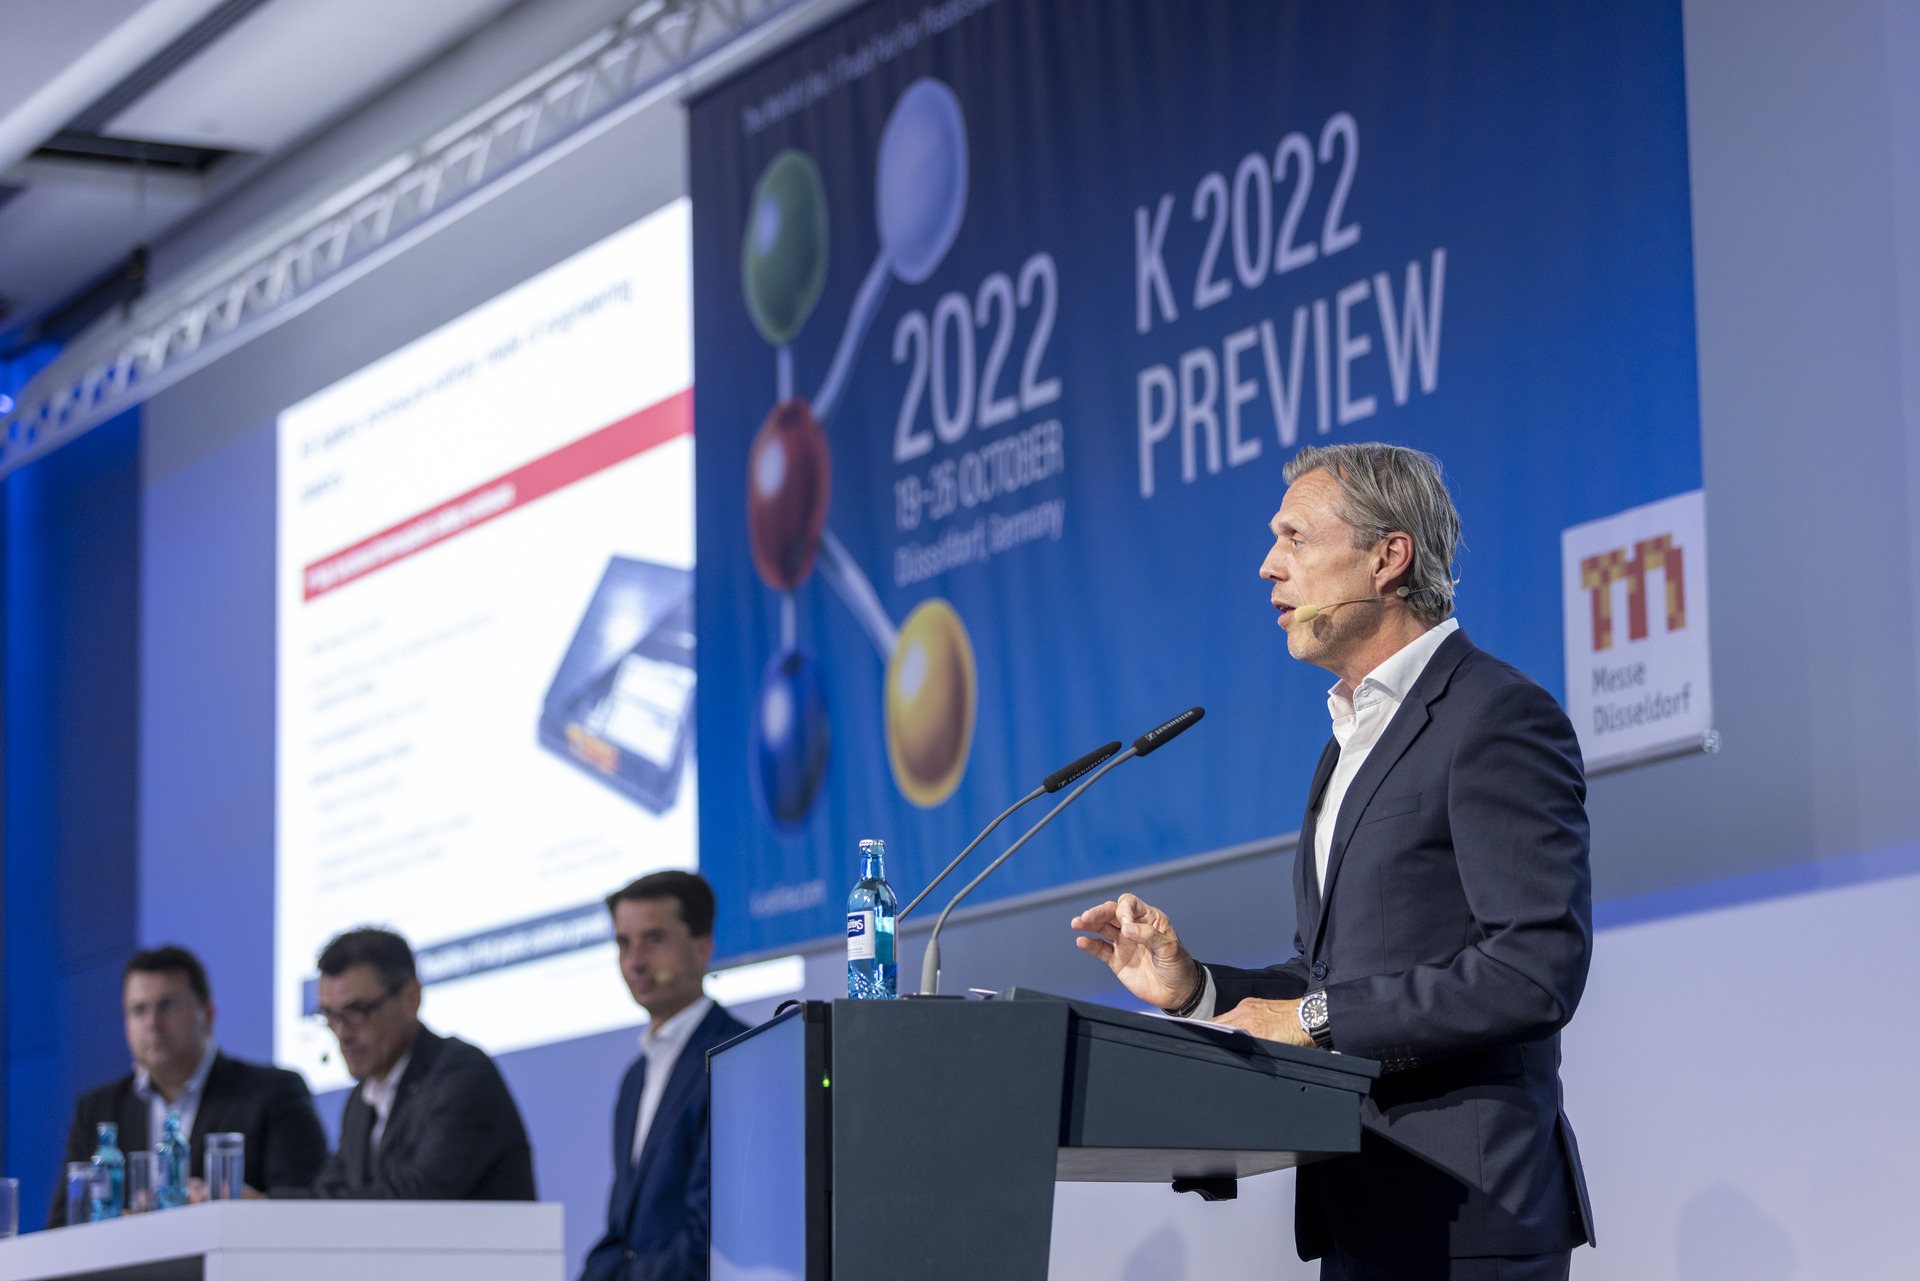 Axel Tuchlenski bei der K 2022 Preview